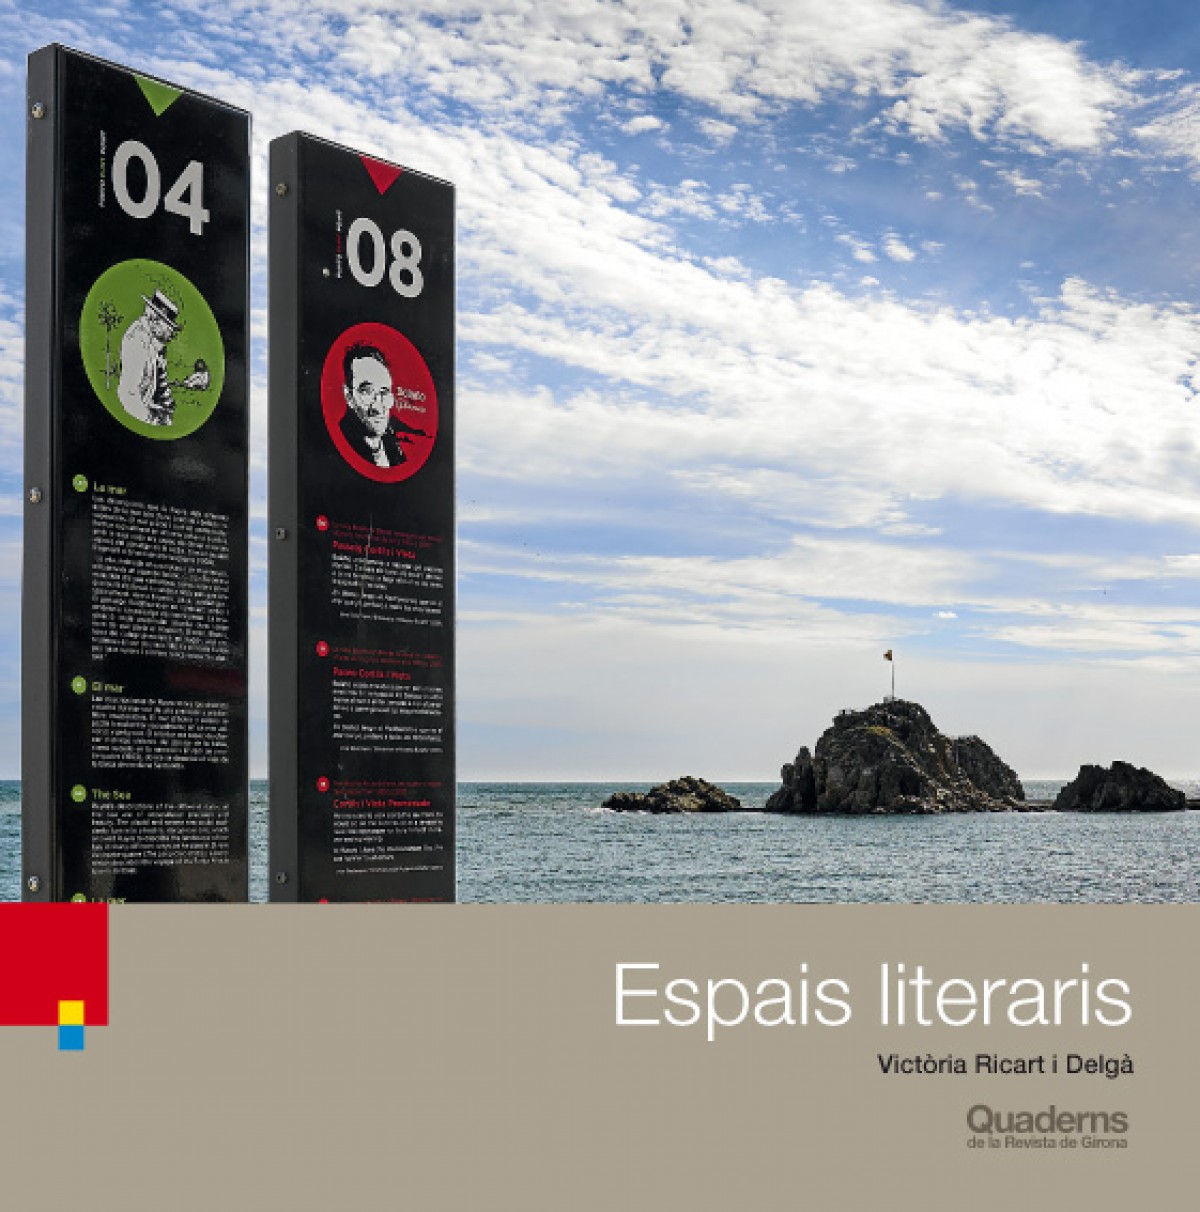 Coberta del nou número dedicat als espais literaris gironins.